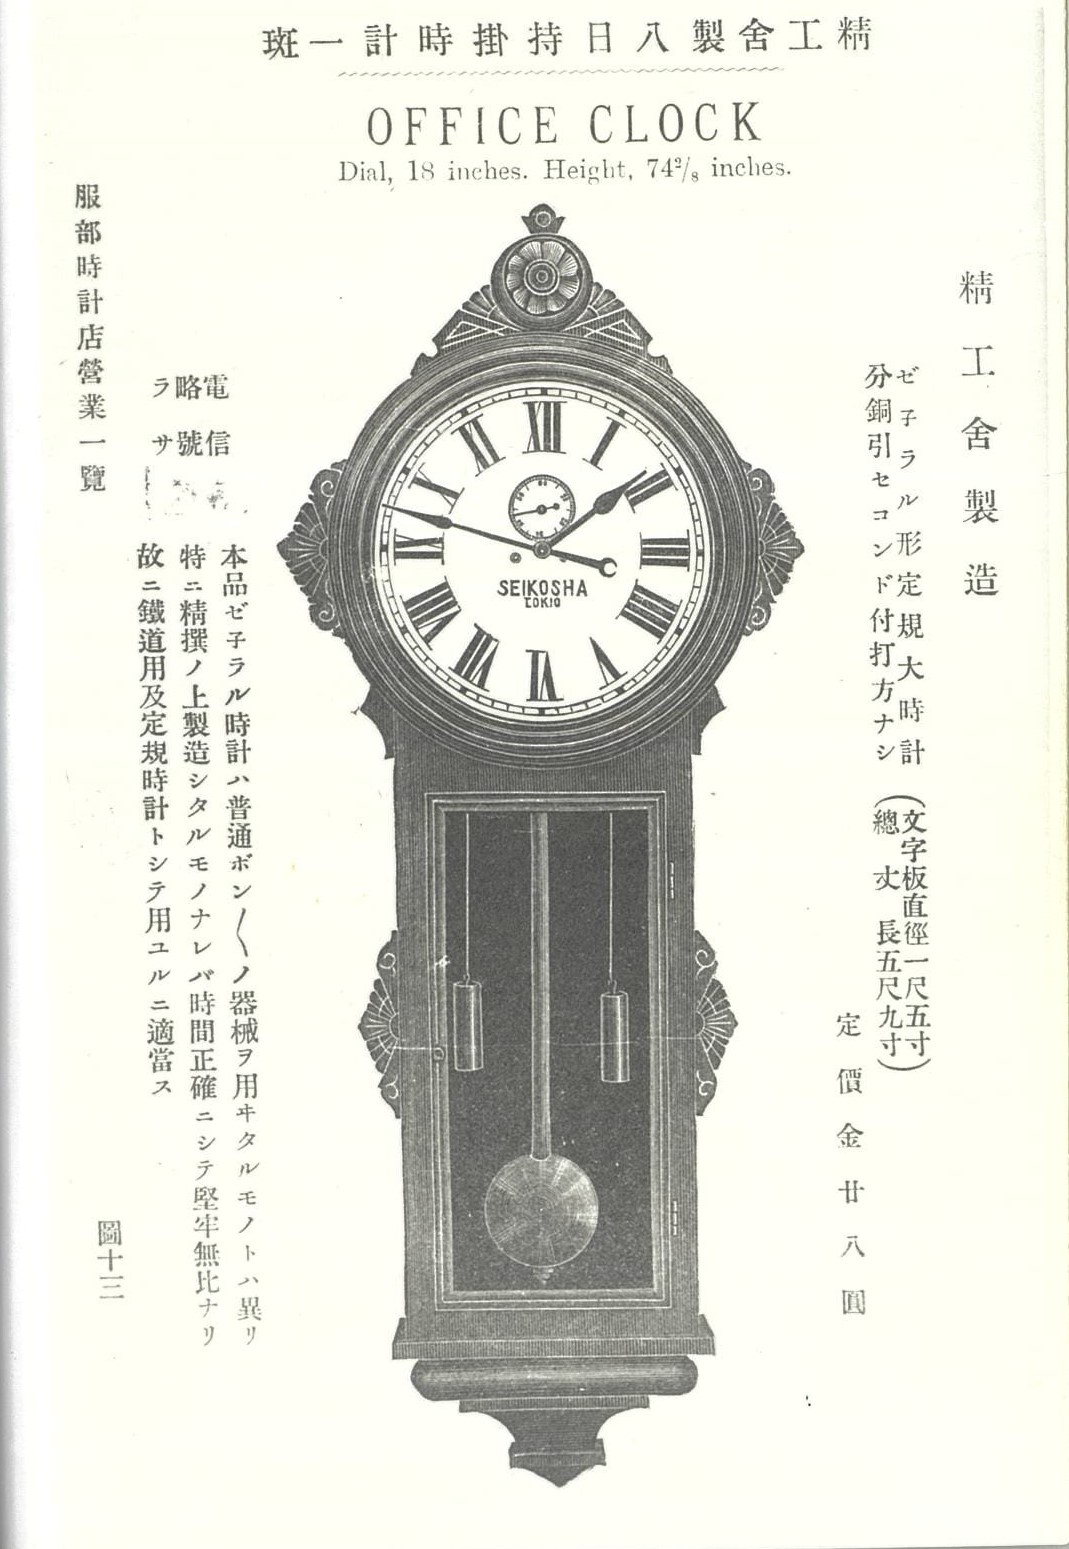 圖錄所見的掛鐘與李長興錶行「準鐘」